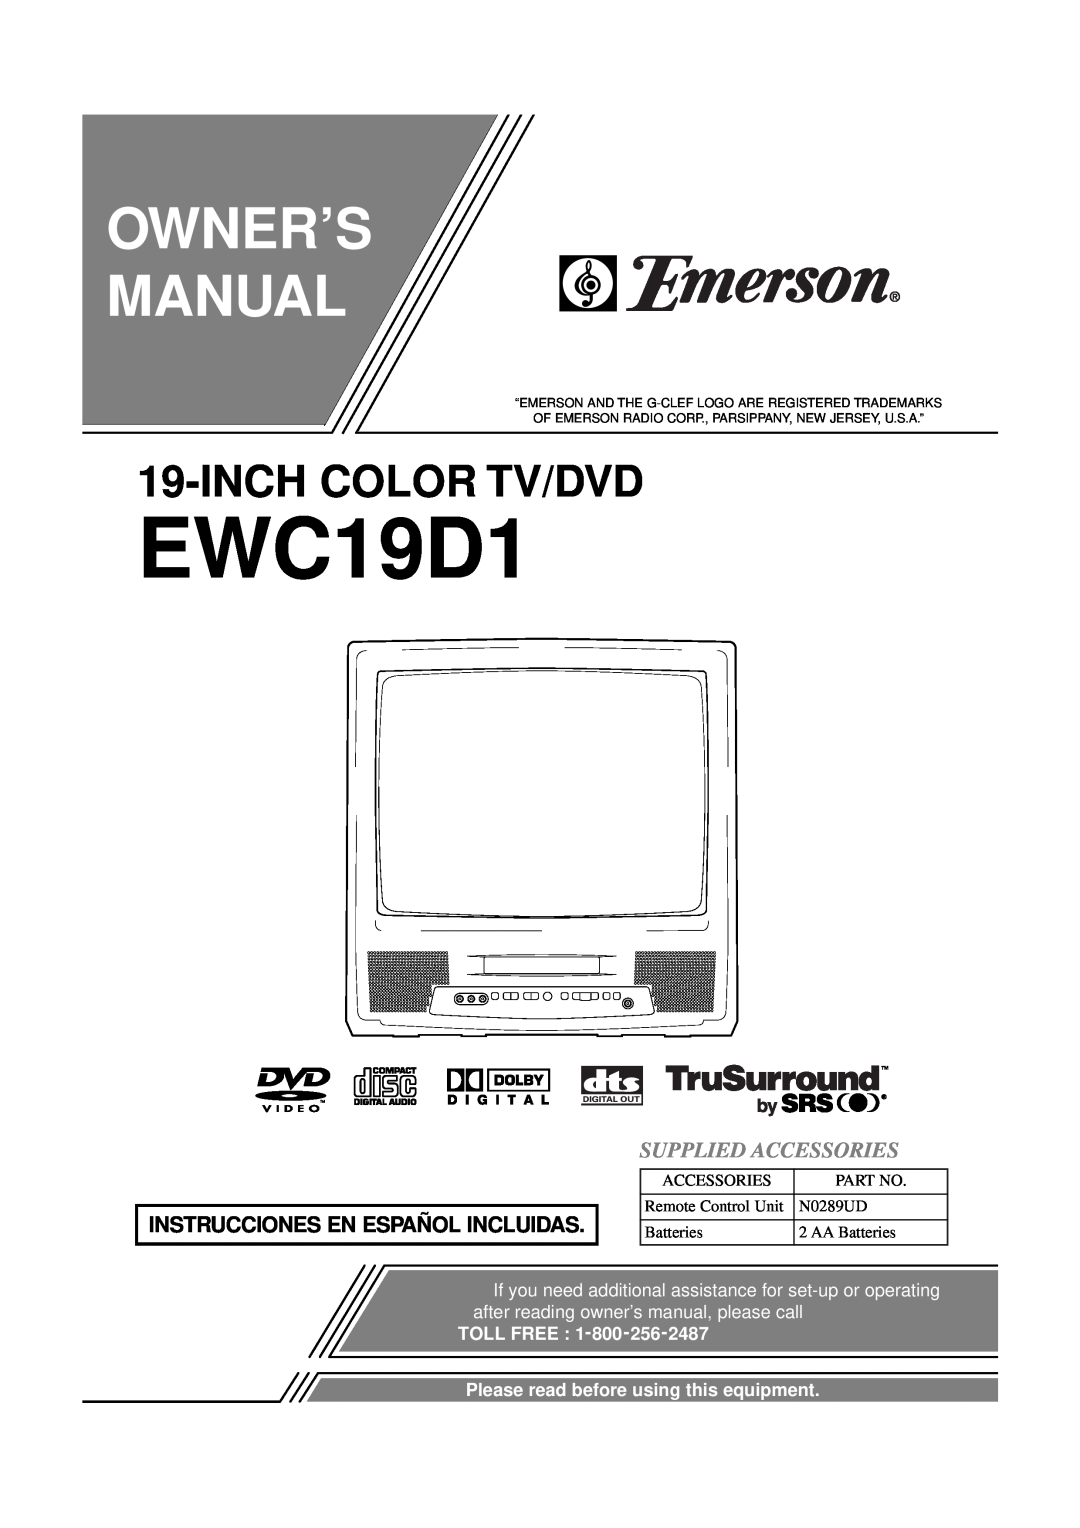 Emerson EWC19D1 owner manual Instrucciones En Español Incluidas, Supplied Accessories, Owner’S Manual, Inch Color Tv/Dvd 